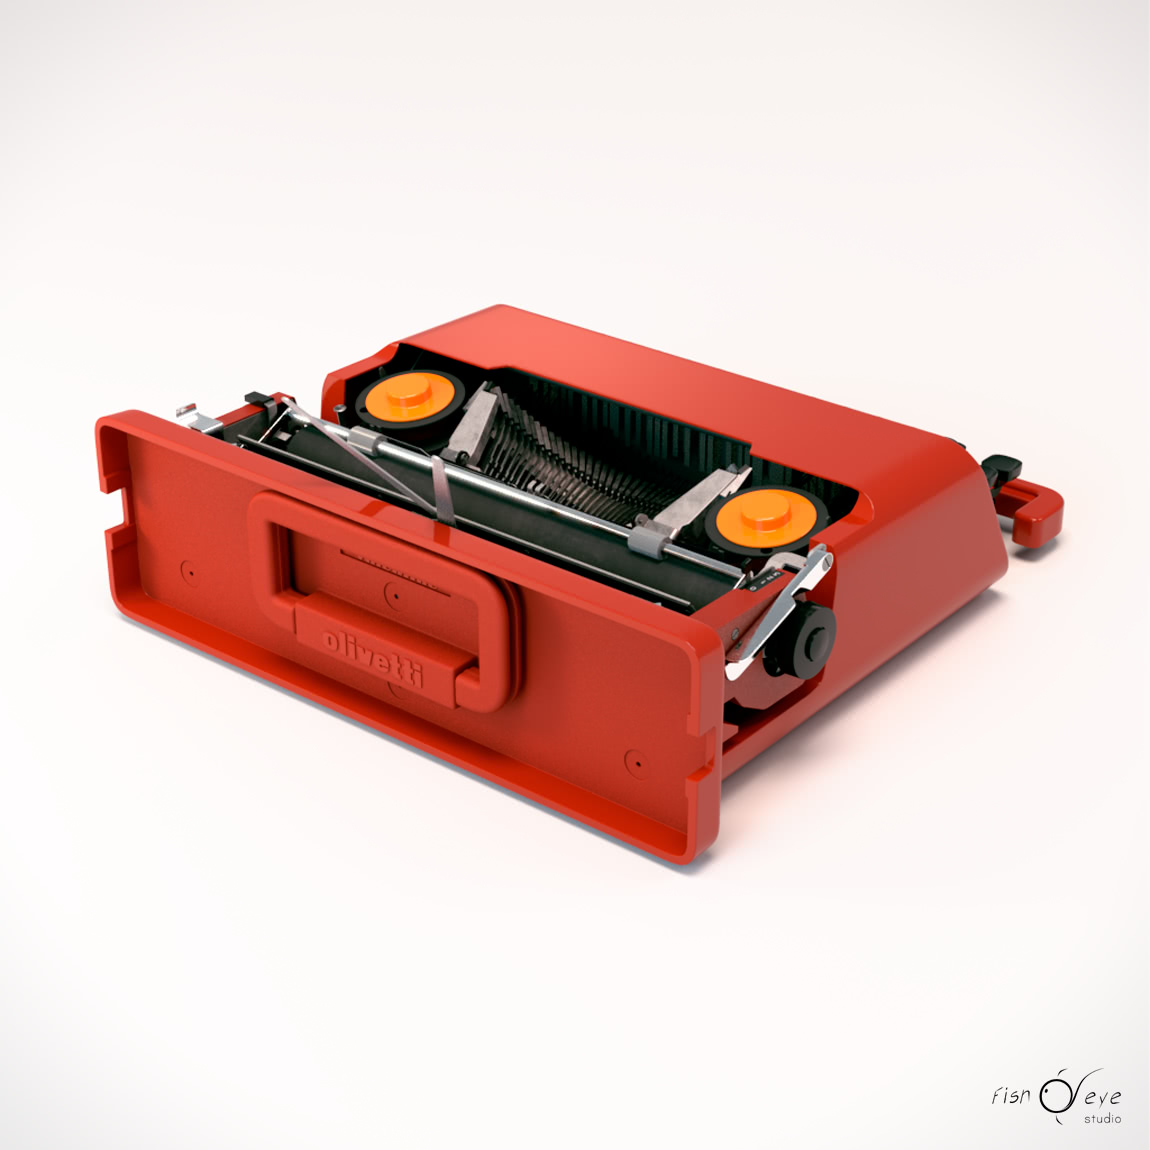 Modello 3d di una macchina da scrivere Olivetti Valentine 05